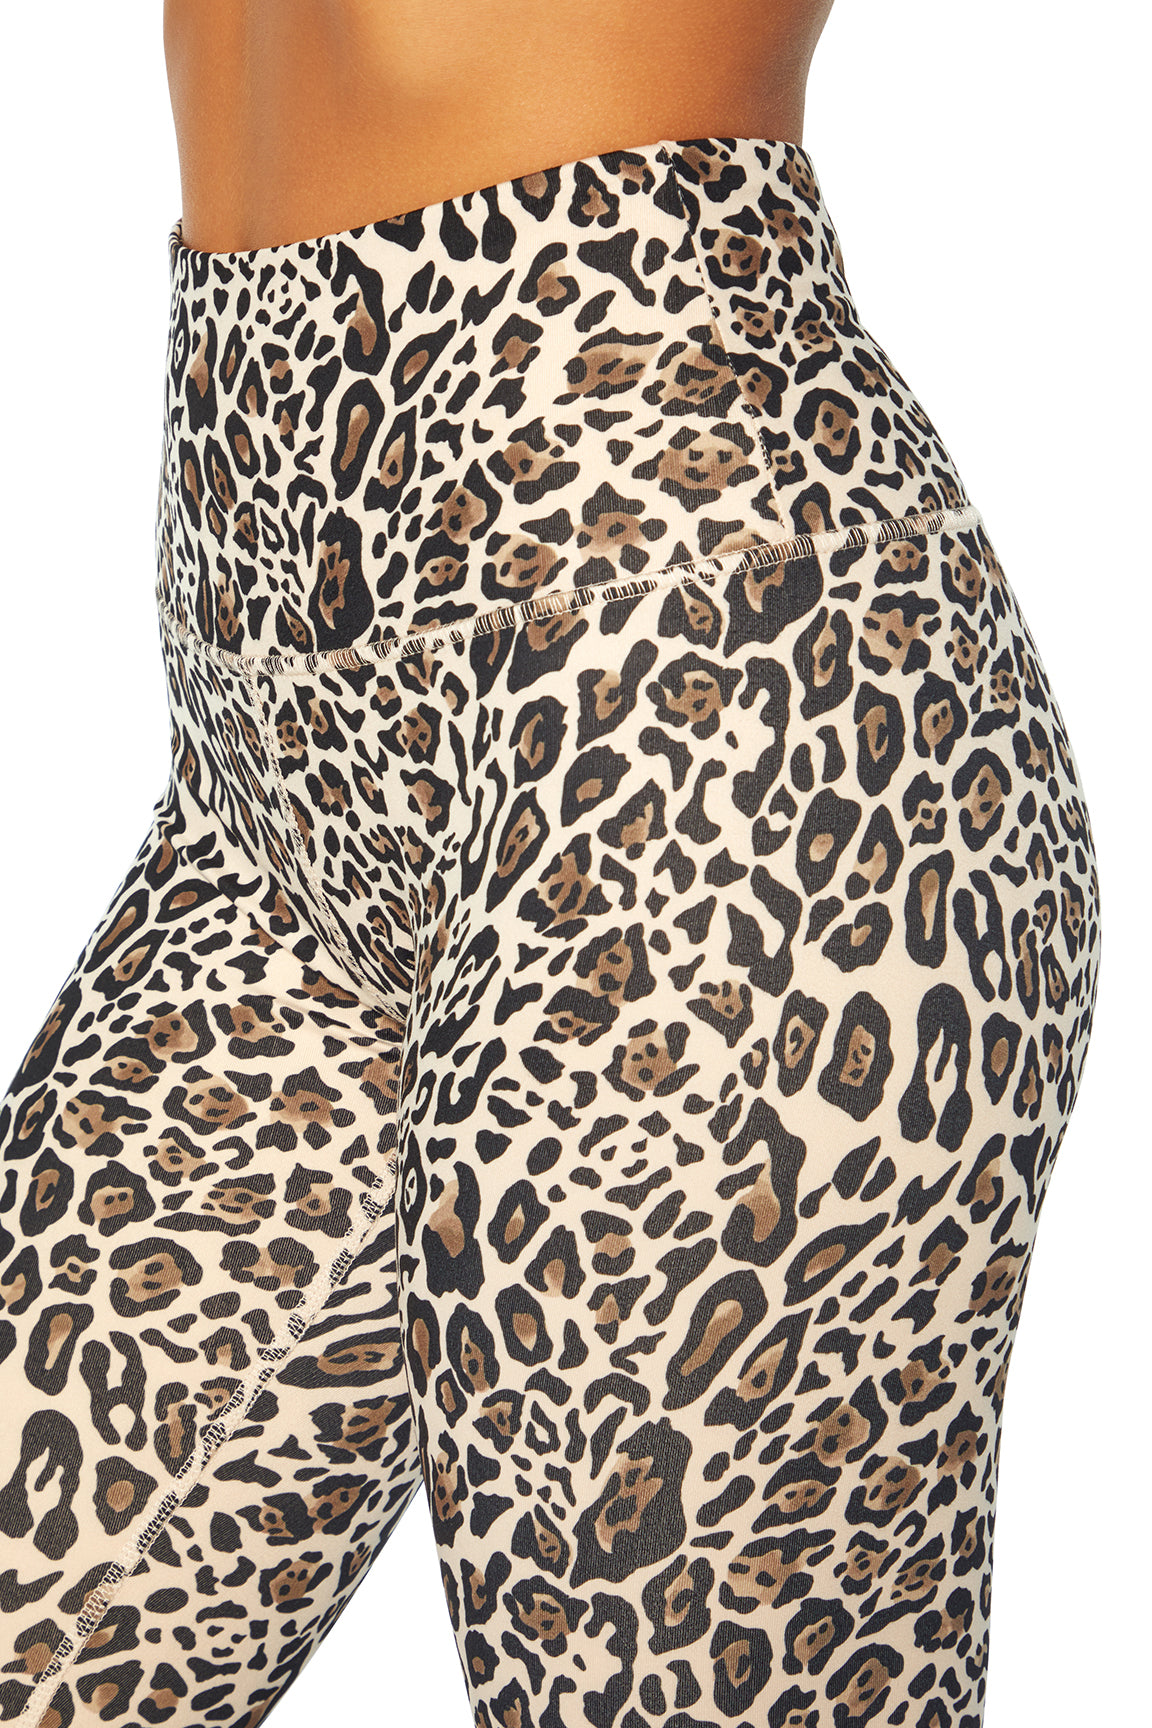 Nilly Legging (Natural Playful Cheetah)